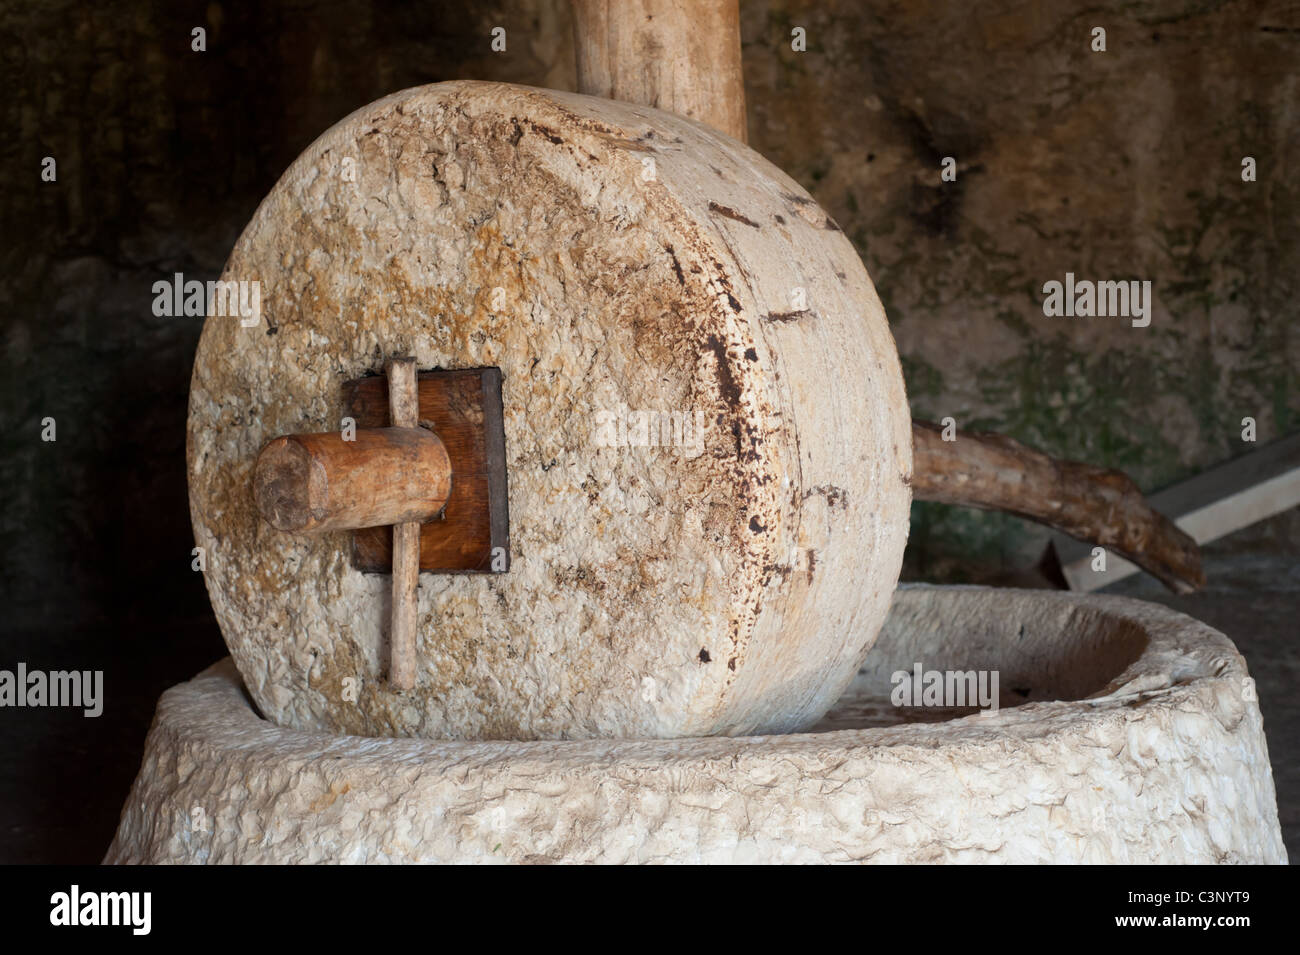 Macinare le olive immagini e fotografie stock ad alta risoluzione - Alamy